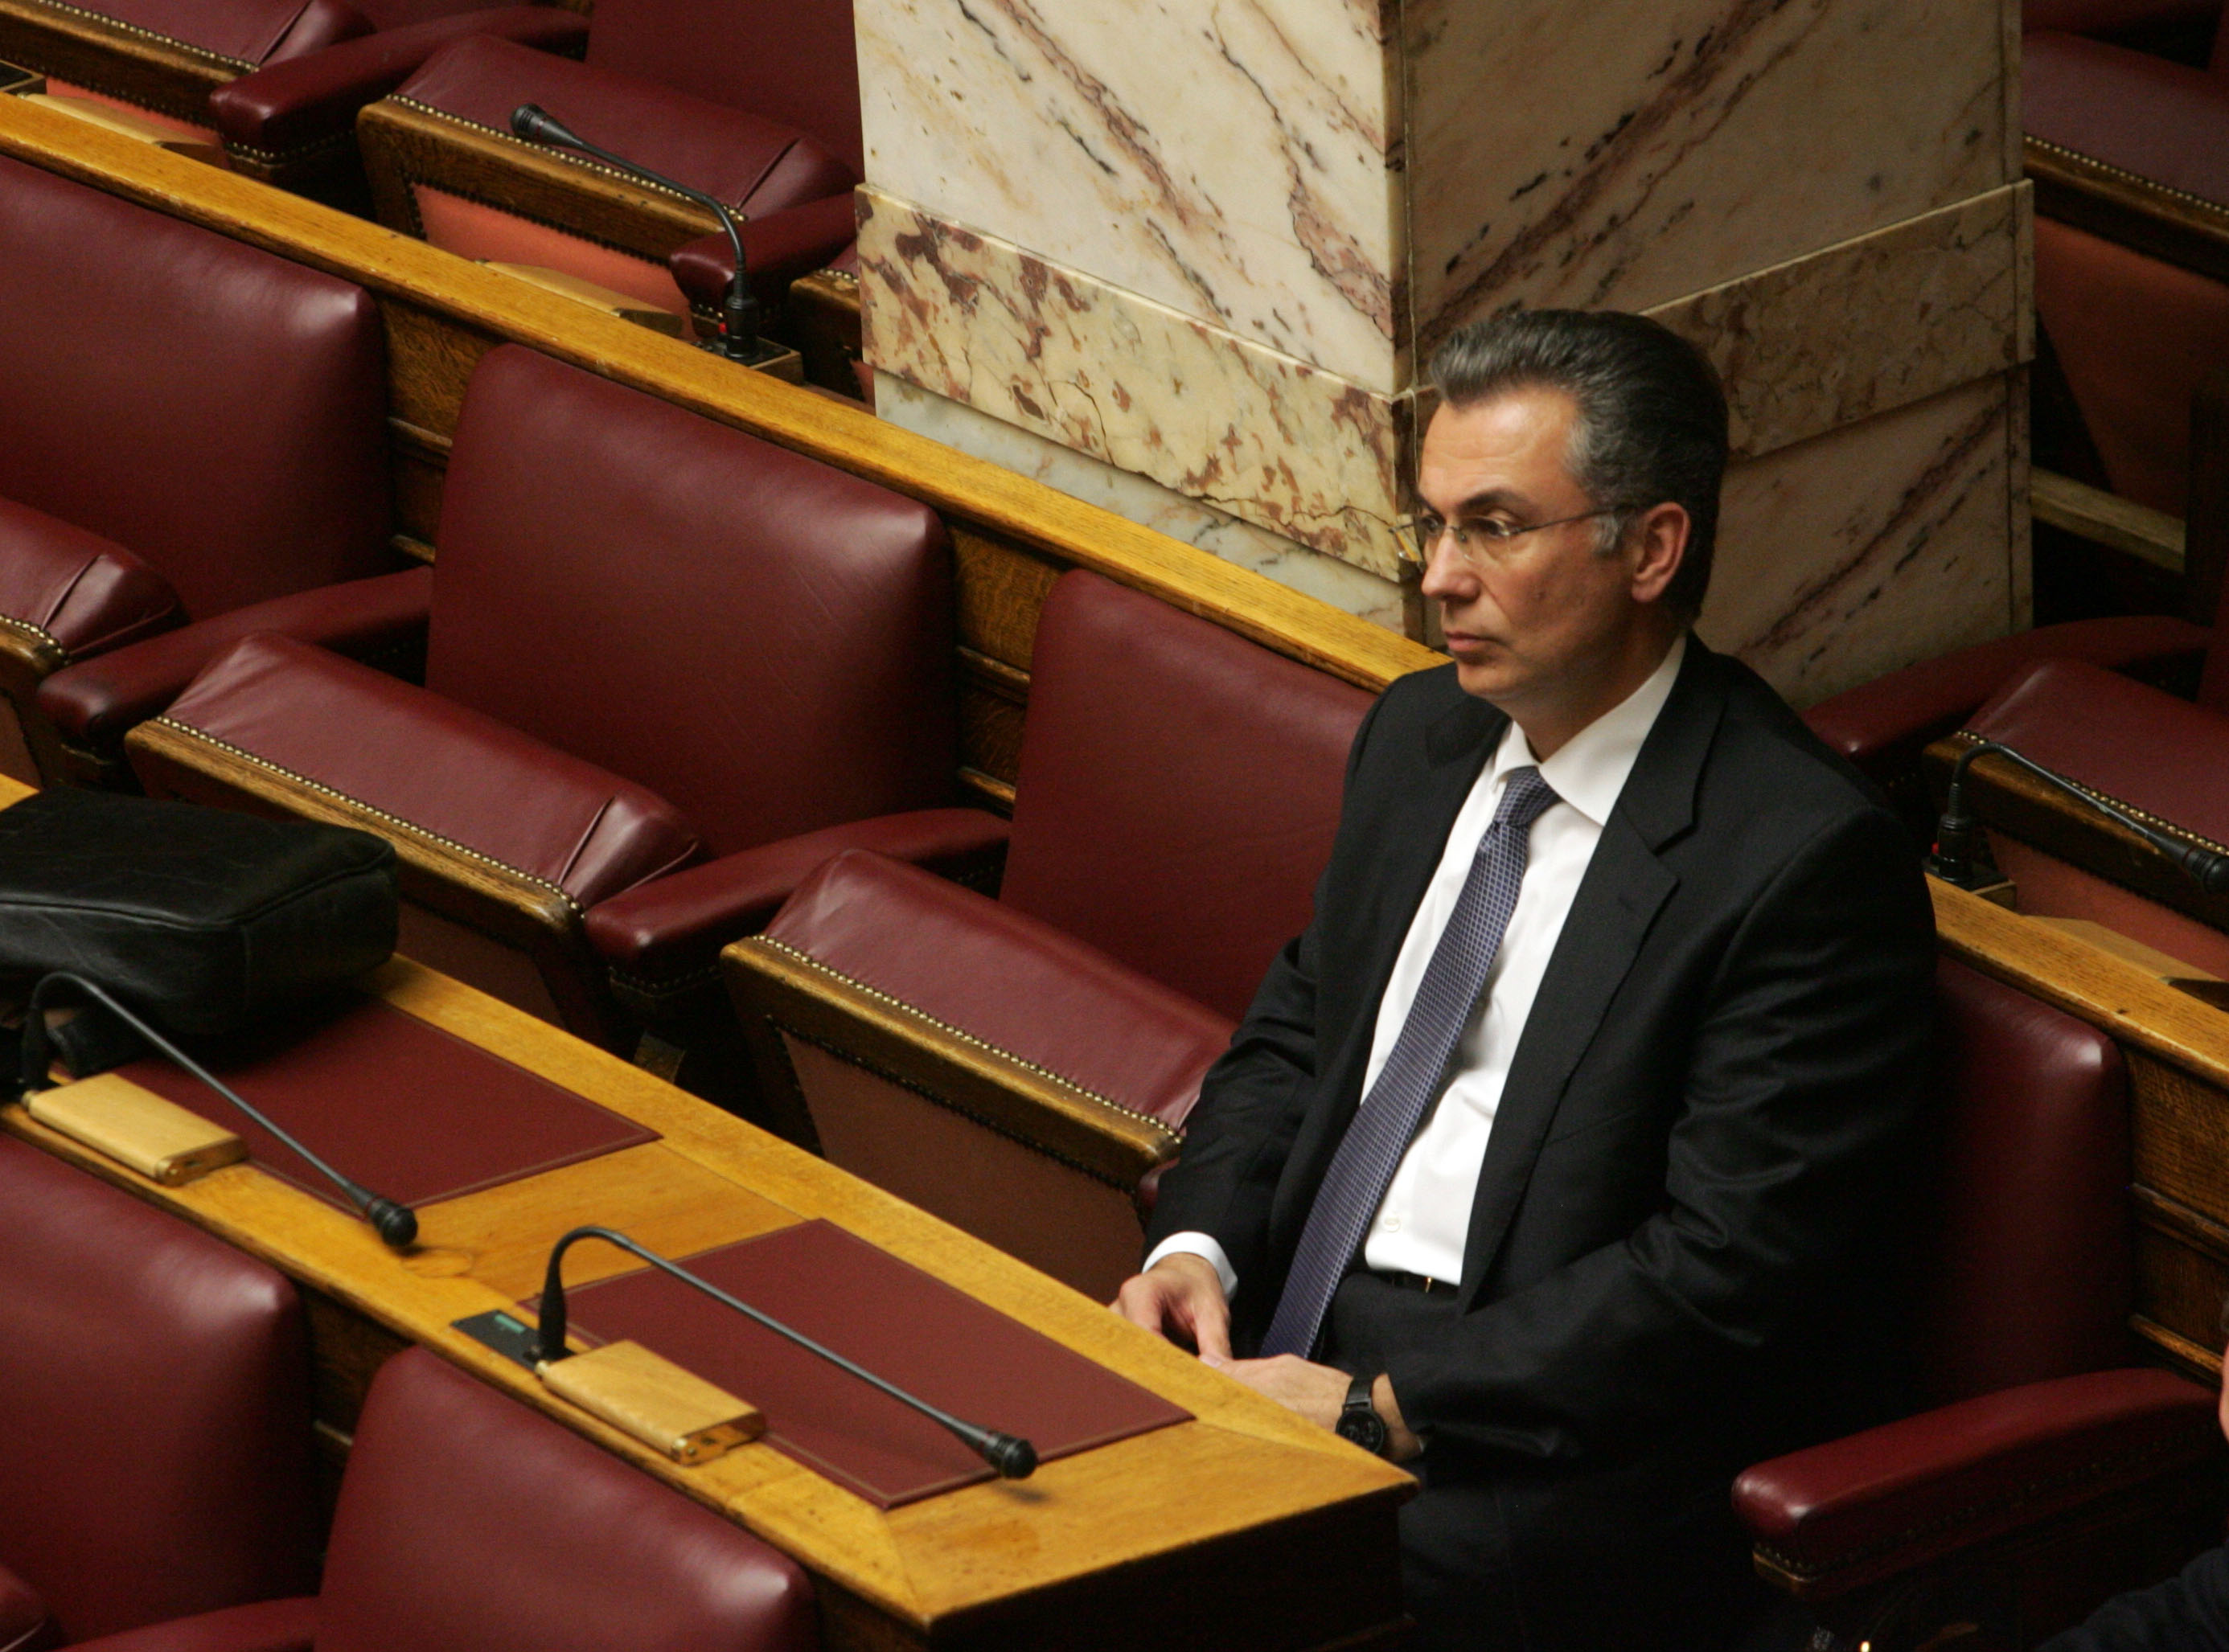 Ρουσόπουλος: Σκέφτομαι σοβαρά να επιστρέψω στην πολιτική